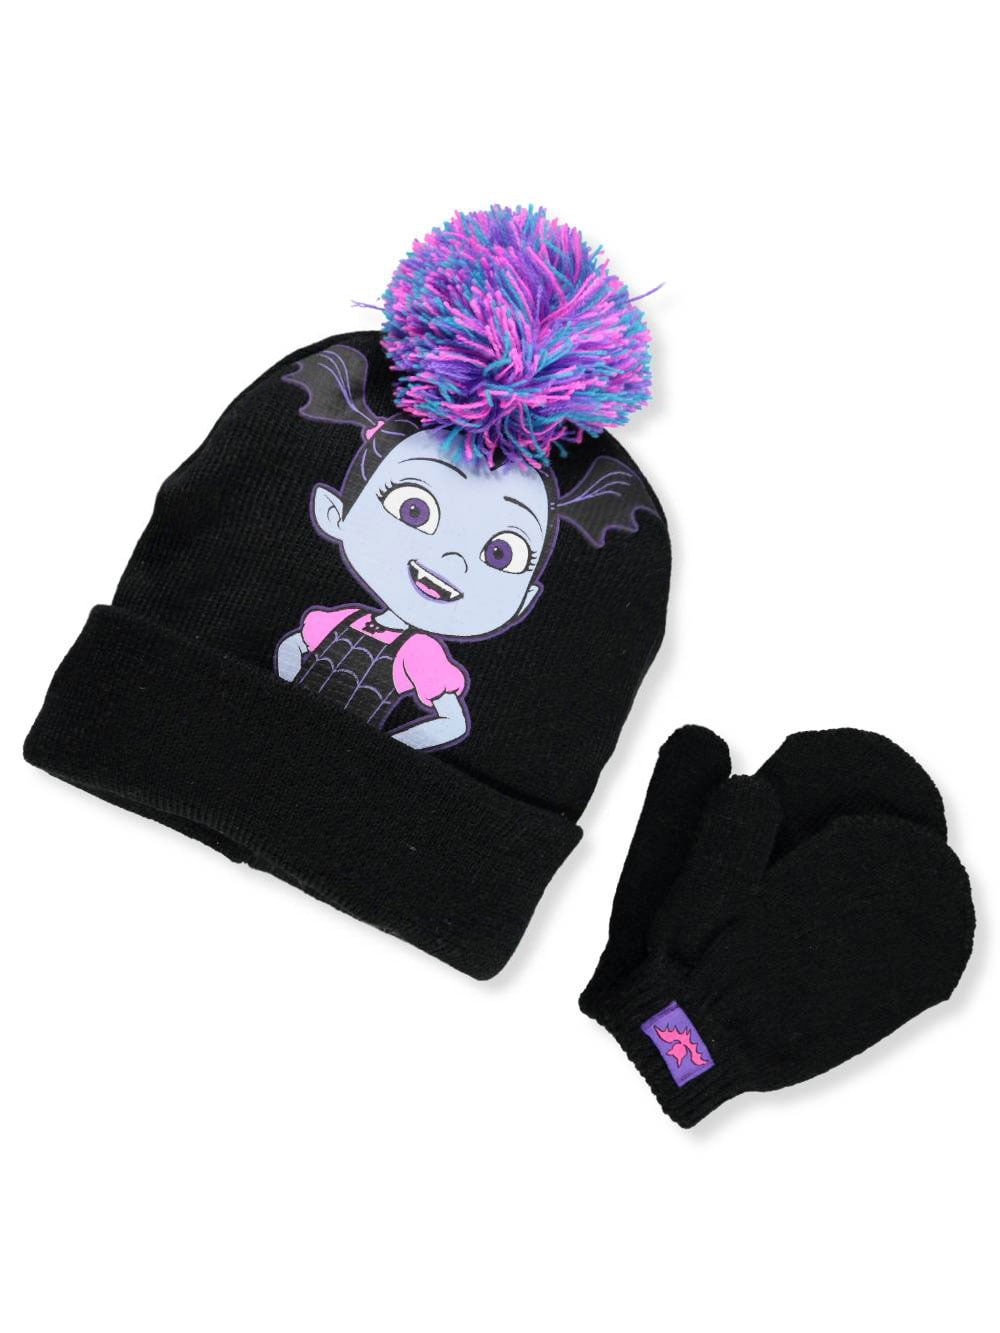 VAMPIRINA pompom hat and gloves set Bobble hat Vampirina and gloves for children 